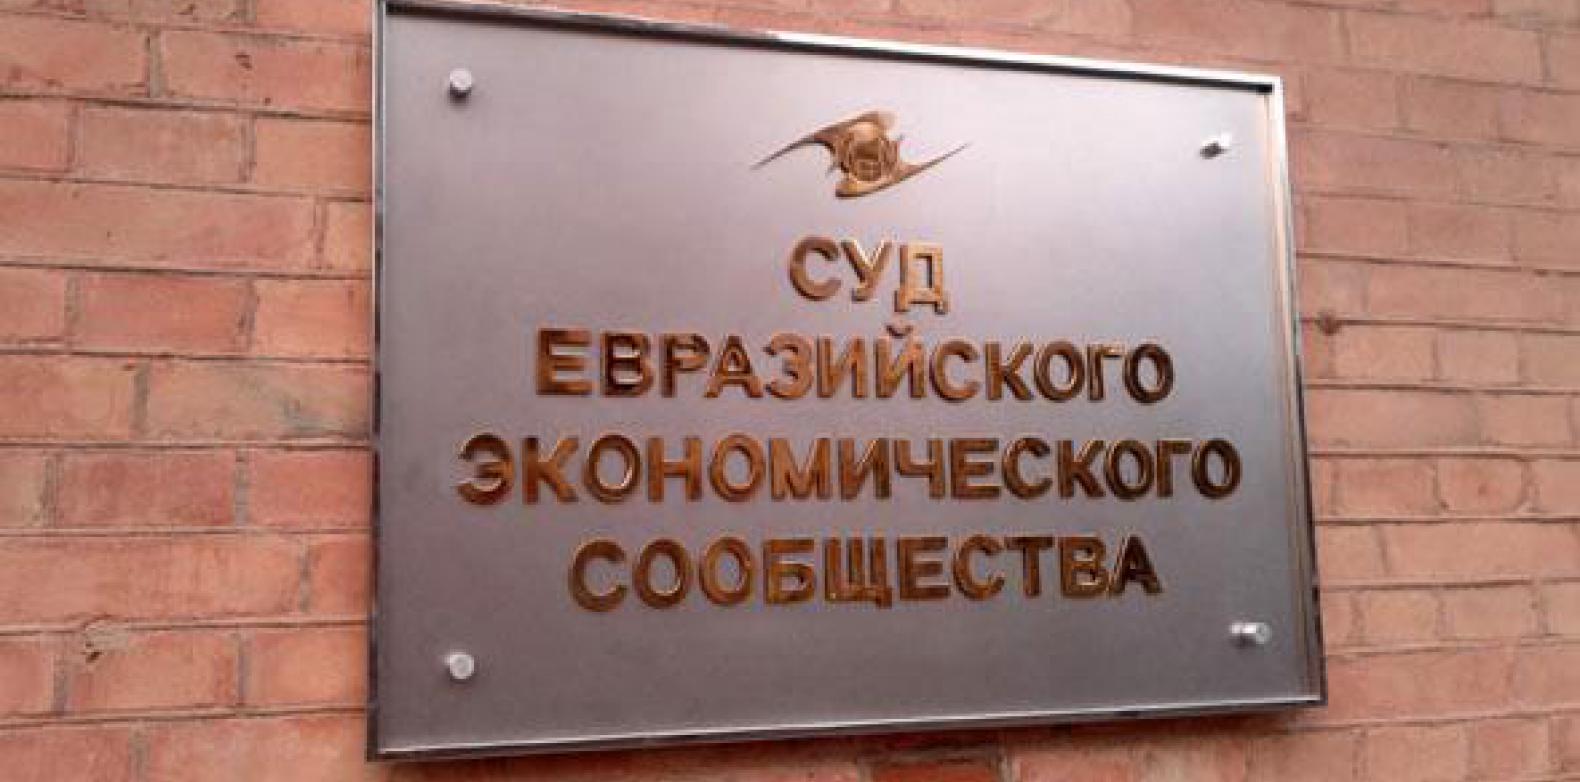 Беларусь попытается добиться соблюдения своих прав в ЕАЭС через суд